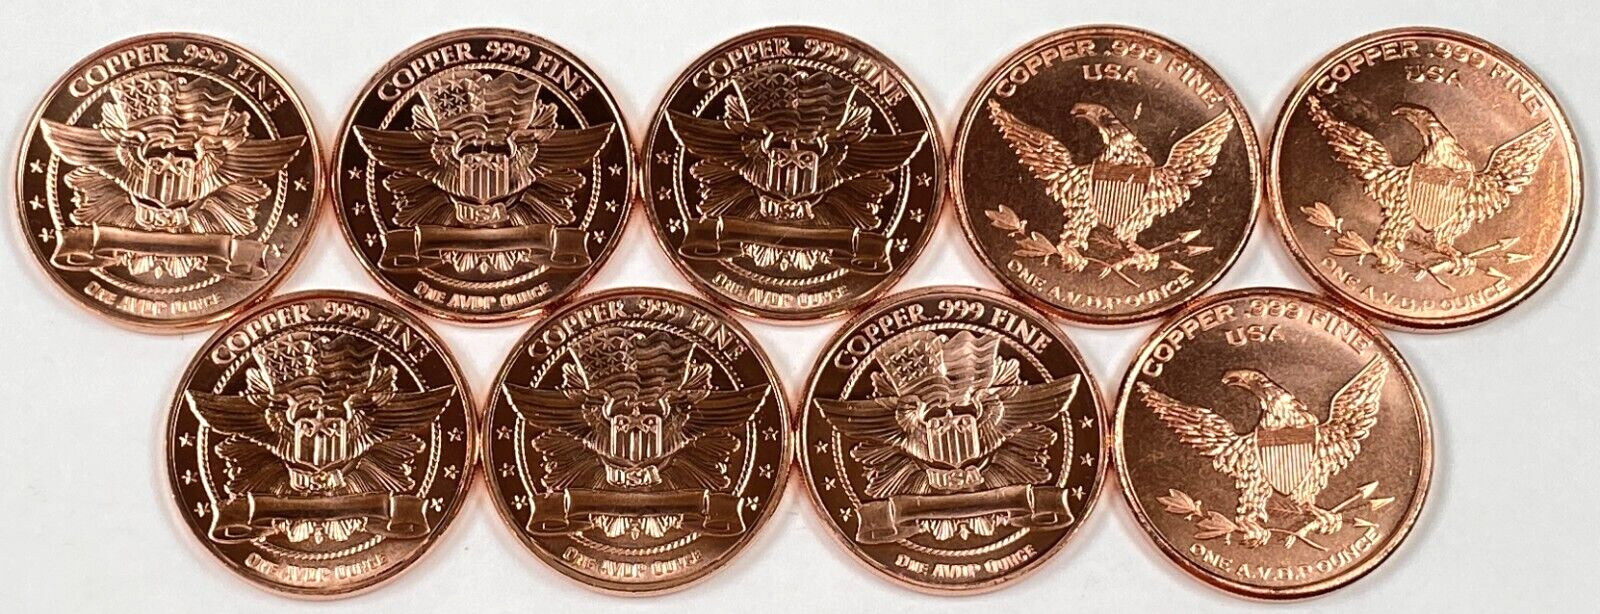 Copper Coins * Nine Piece Dinosaur Collector Set * Fine .999 Bullion Rounds Без бренда - фотография #2